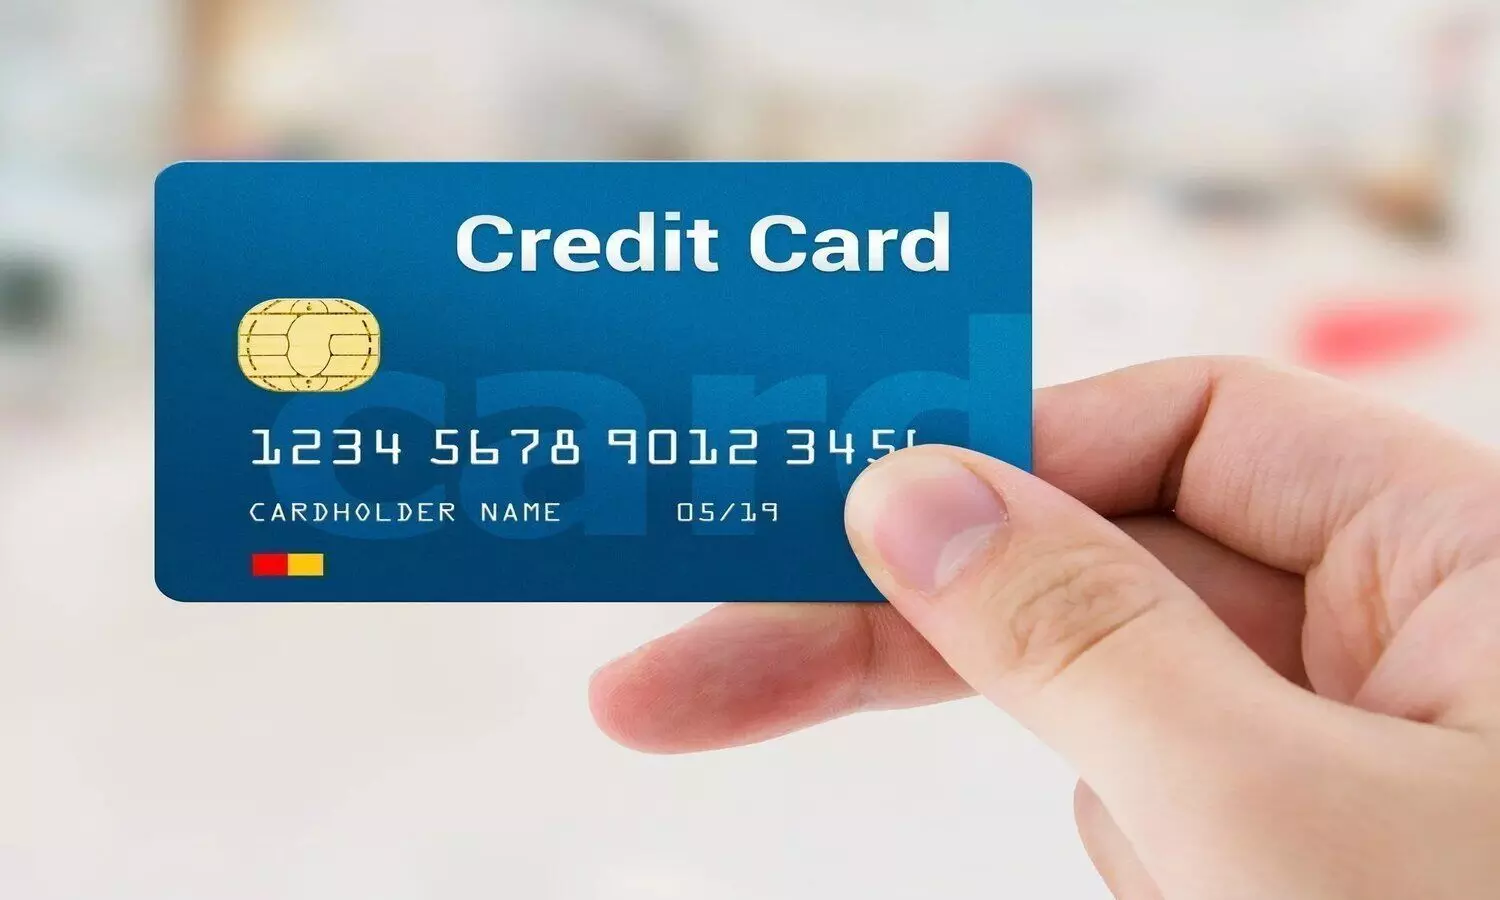 Credit Card: क्रेडिट कार्ड के ये फायदे नहीं जानते होंगे आप, लगा लें शर्त